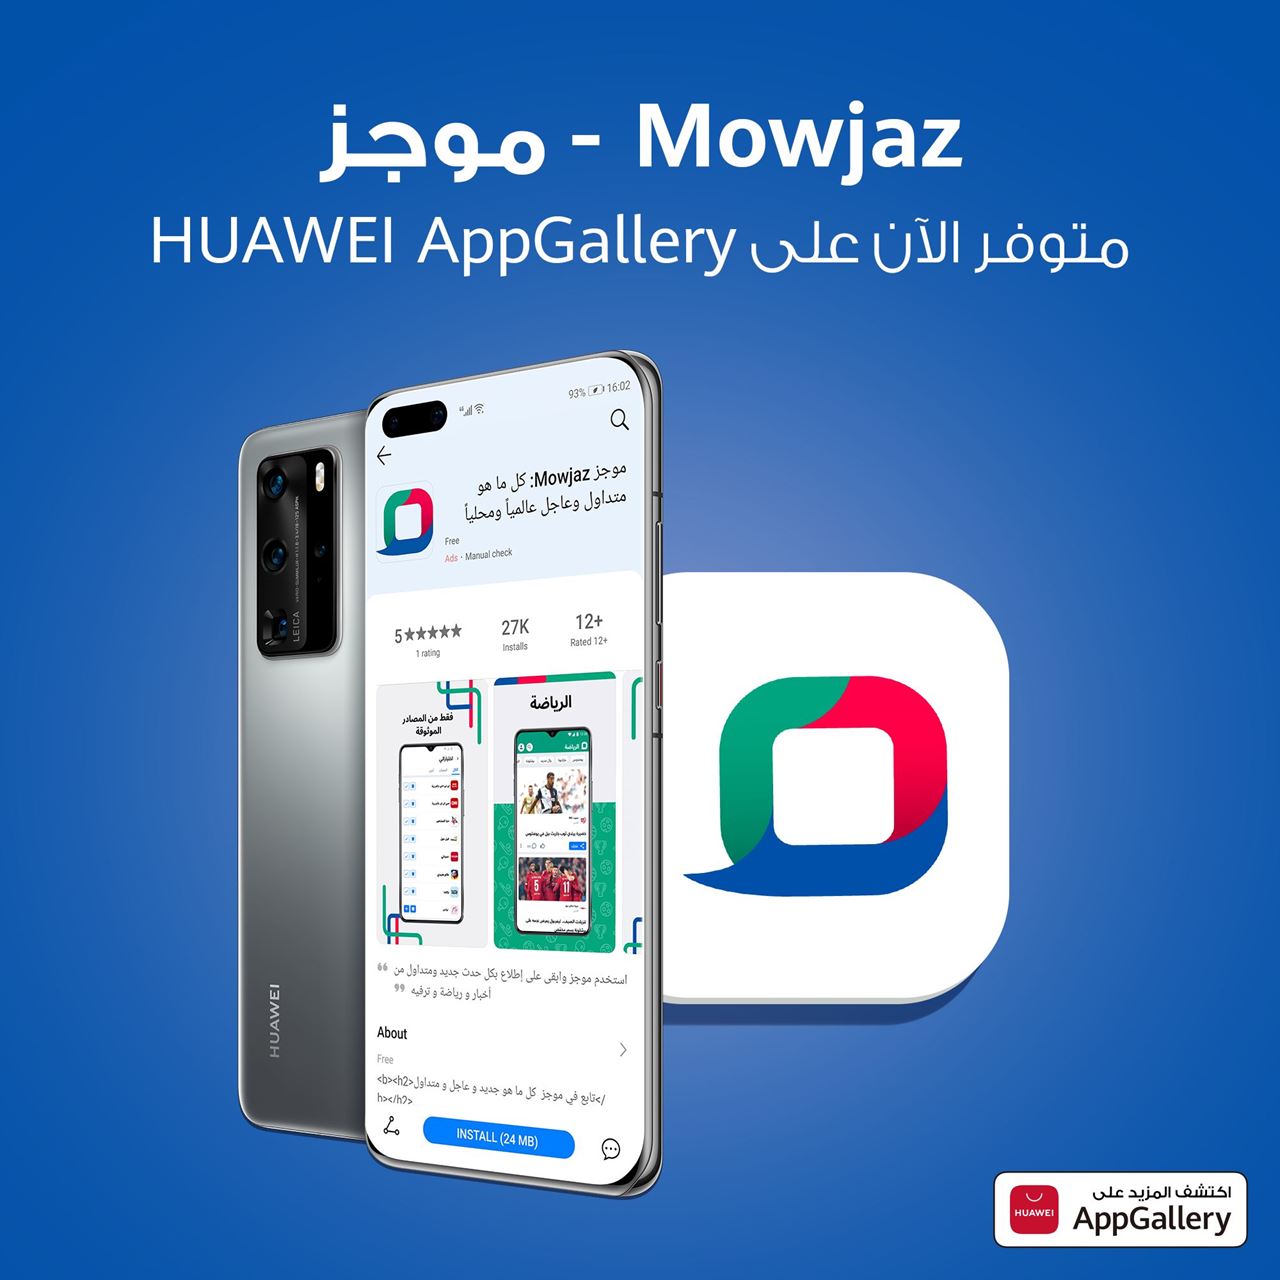 التطبيق الرئيسي للأخبار والمحتوى بالعربي  " Mowjaz - موجز" متوفر الآن  عبر منصة HUAWEI AppGallery